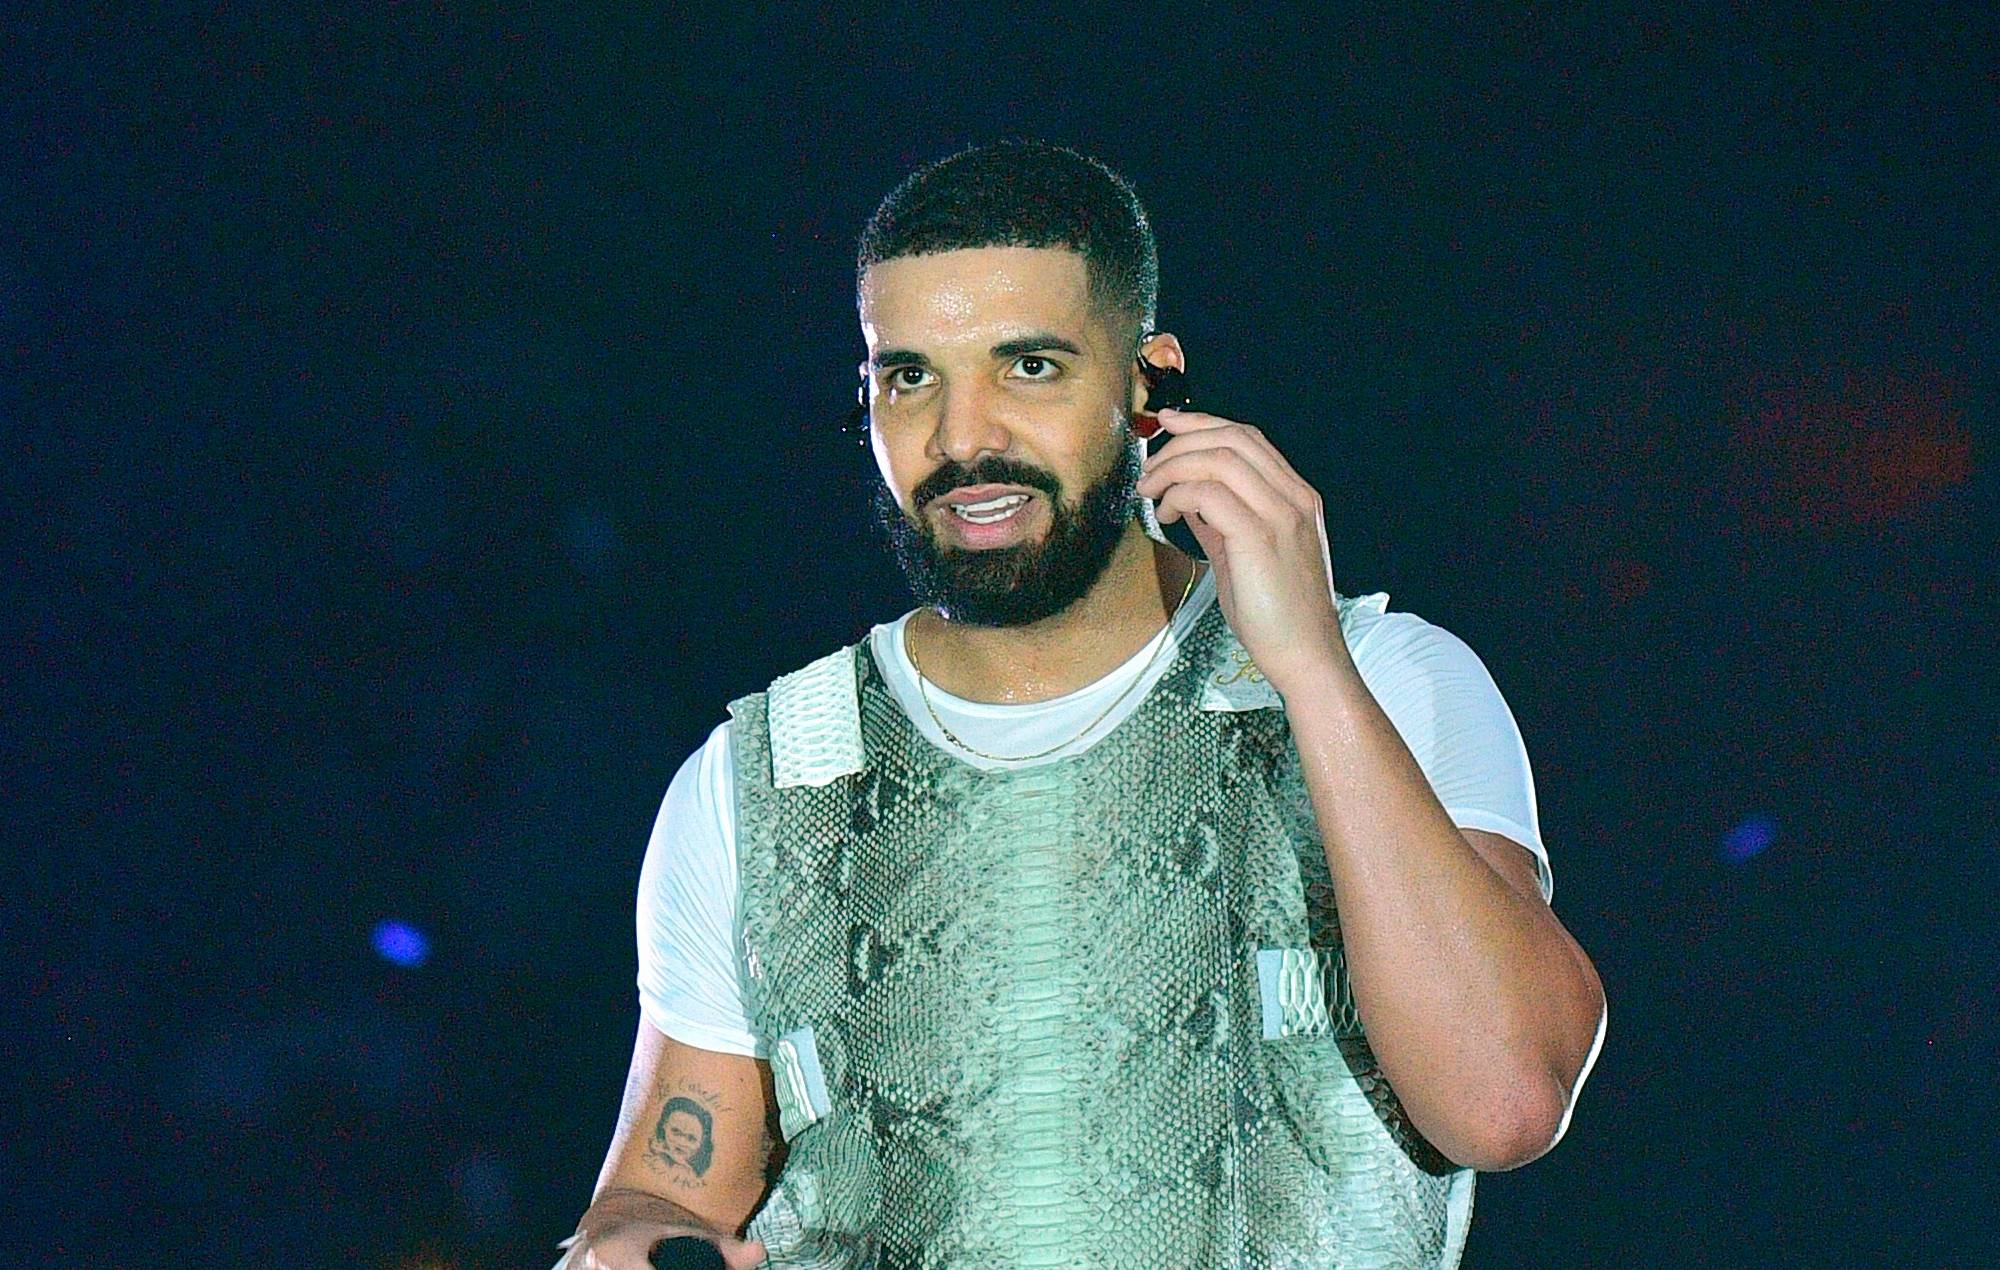 Un clip de Drake siendo trolleado por un comediante en las redes sociales se vuelve viral